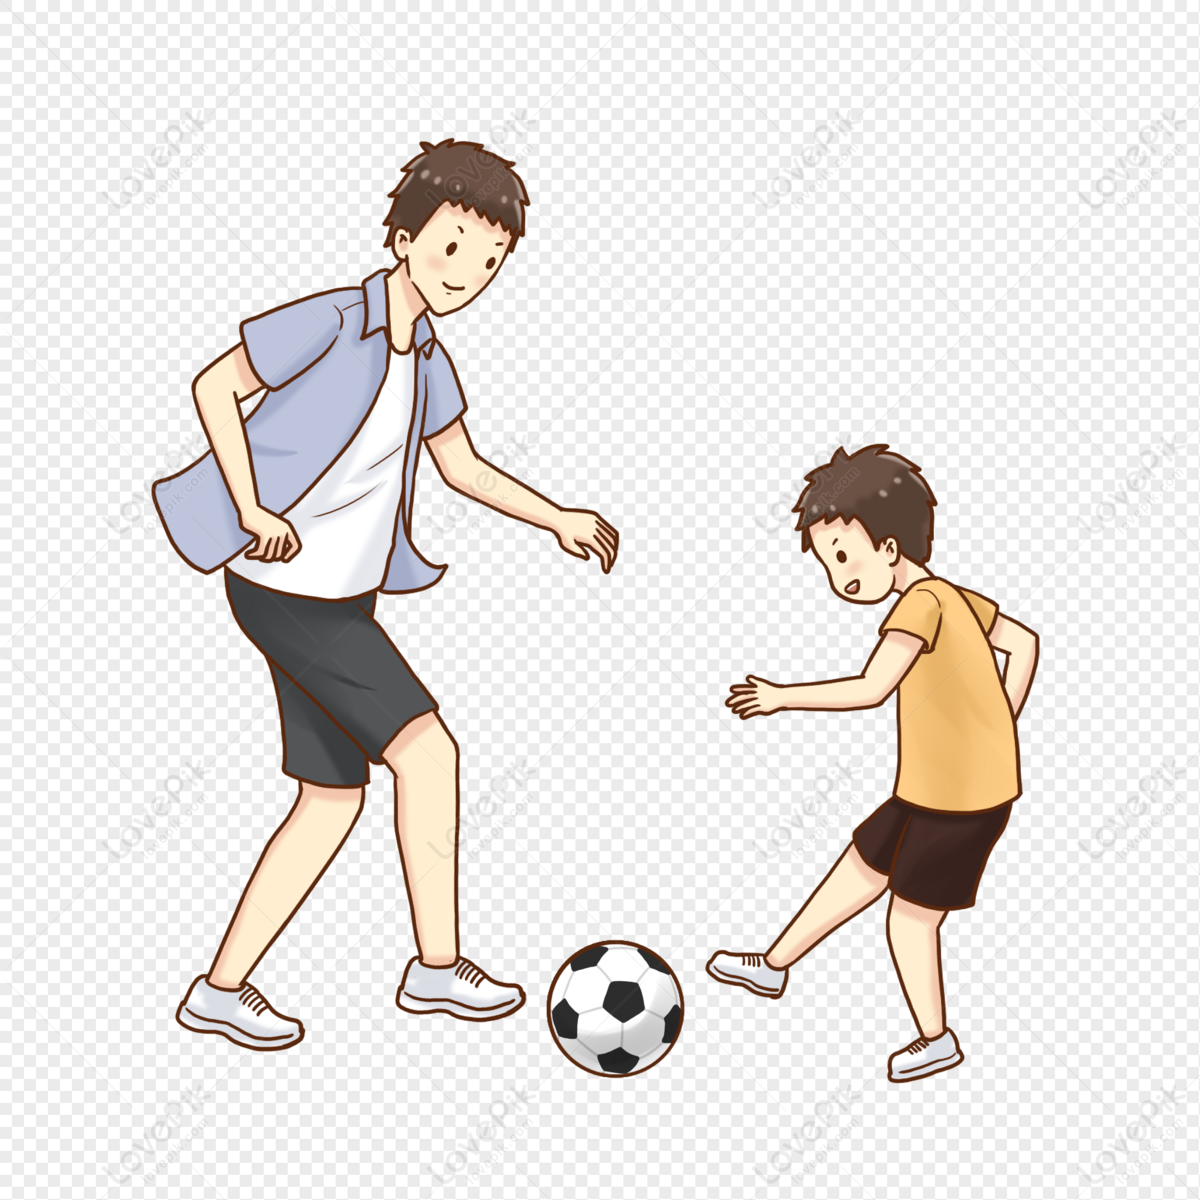 Папа играет в футбол. Папа с сыном играют в футбол рисунок. Дети играют в футбол рисунок. Рисунки папы и ребенка играющих в футбол. Папа играет в футбол мультяшный.